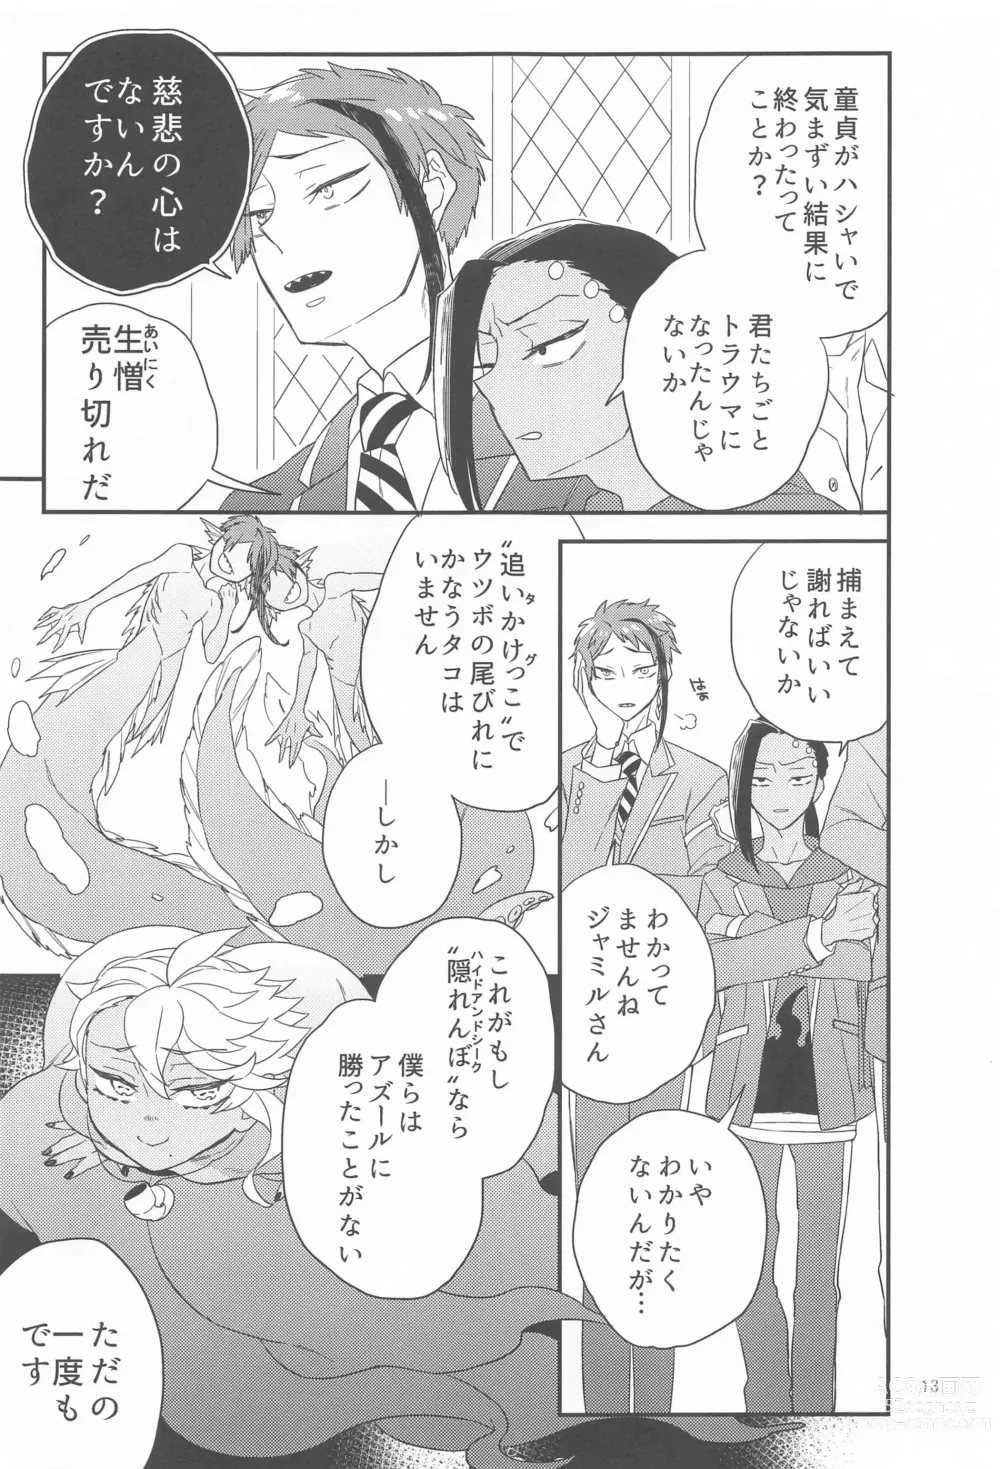 Page 12 of doujinshi Please Don’t Run Away!